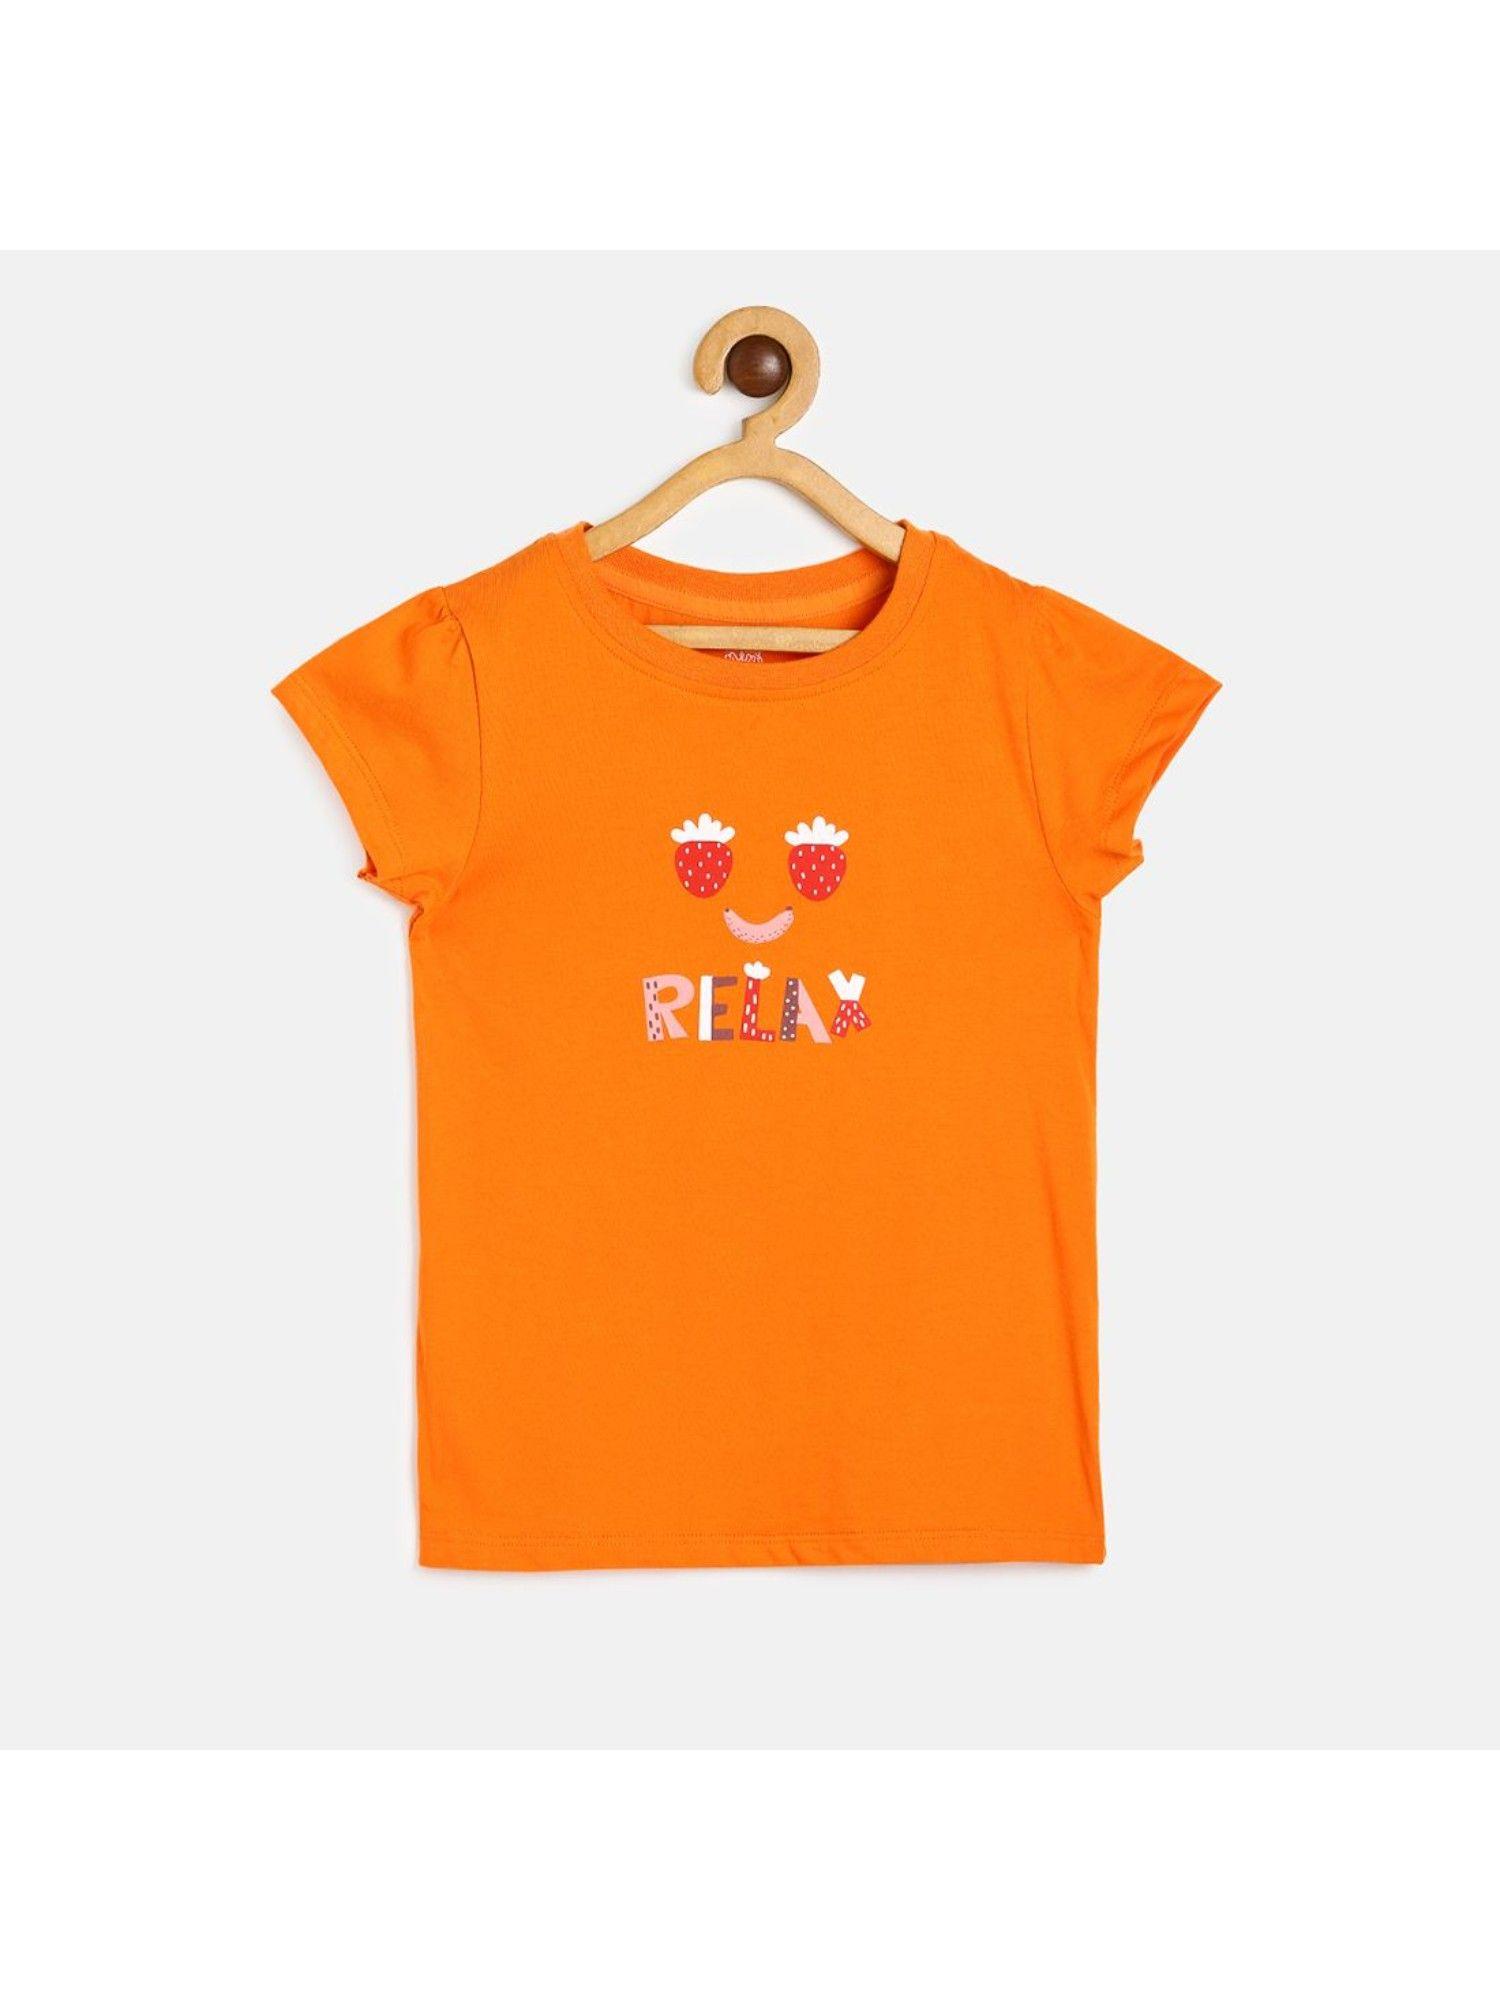 kids girls orange knit top